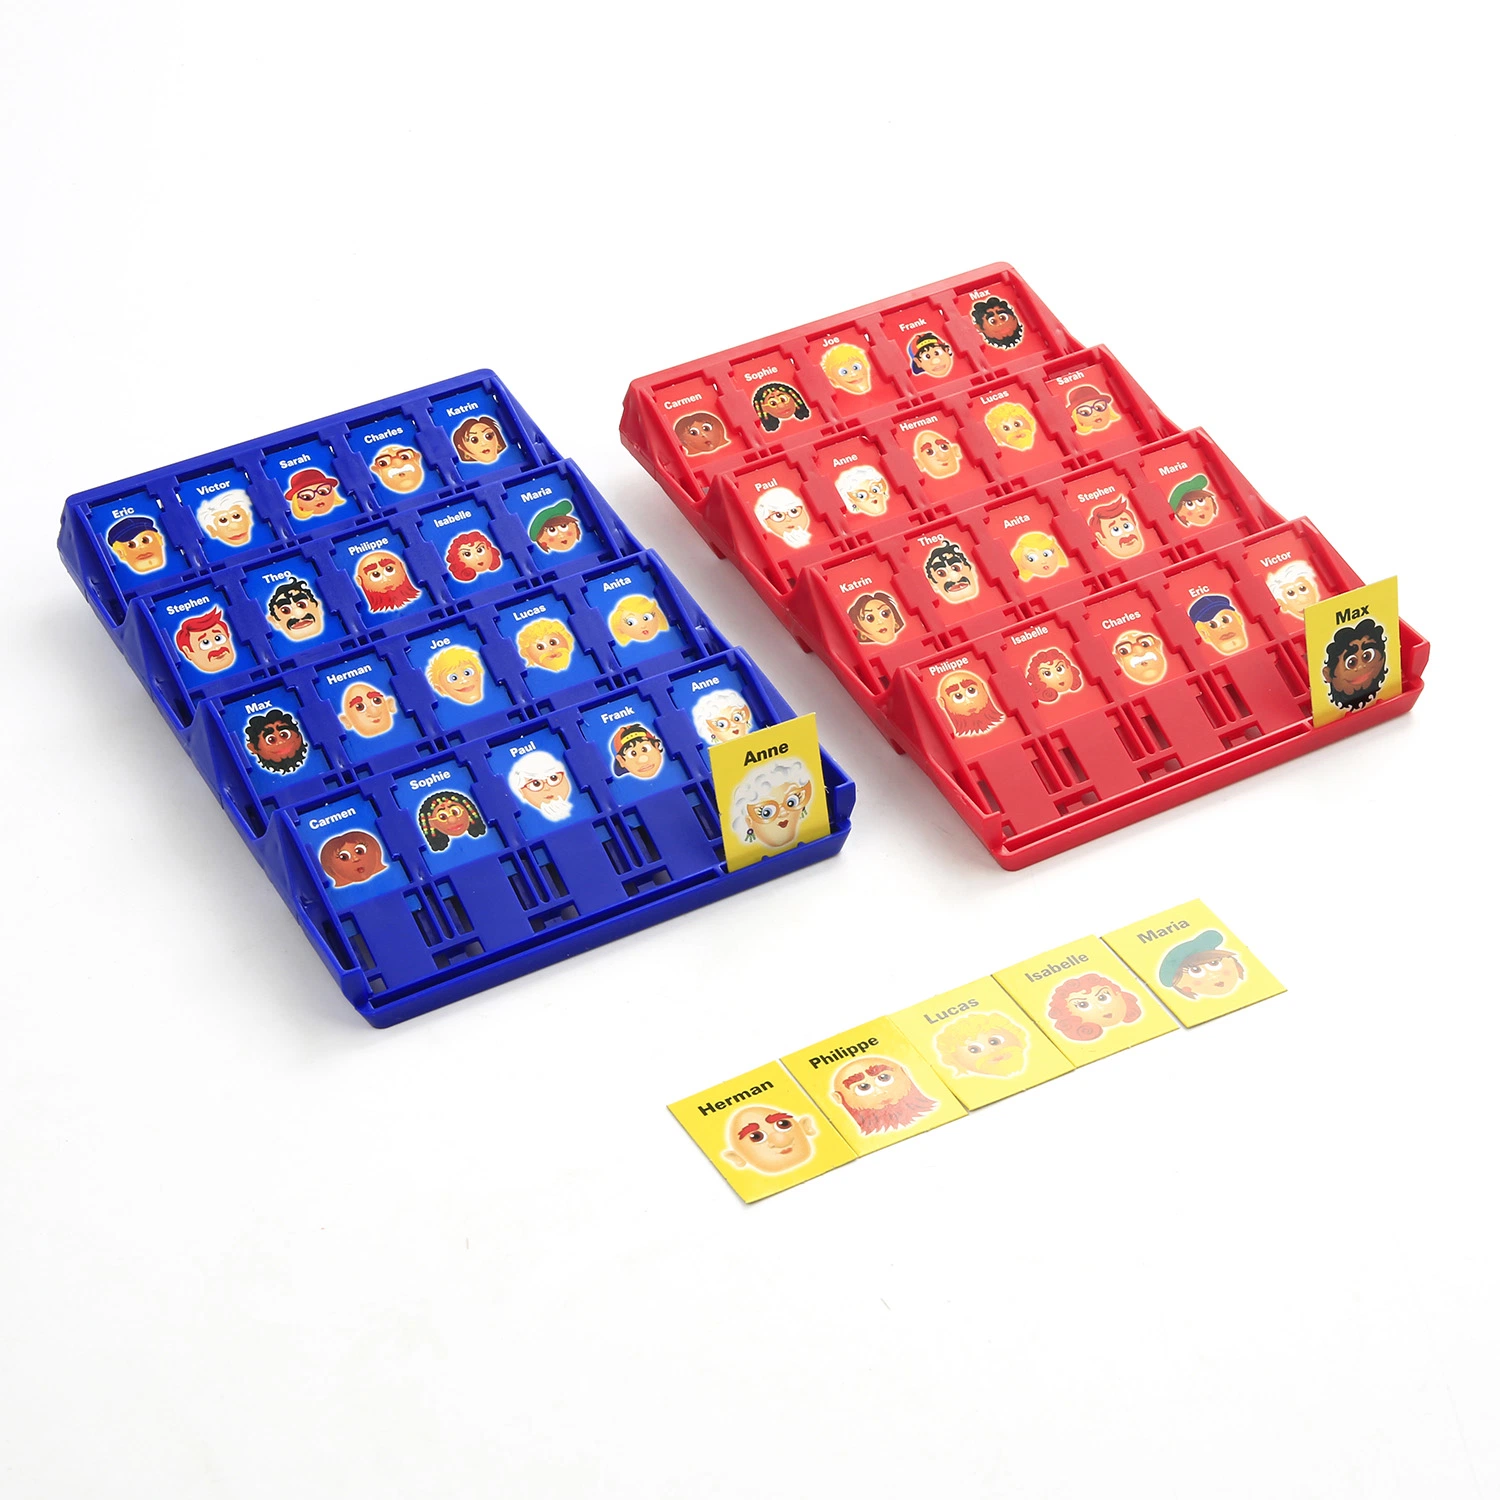 QS Toys العائلة مضحك معركة البلاستيك مجموعة الفكرية لوحة اللعب لعبة لعب التعليم تخمين ميني من لعبة للأطفال لغز الألعاب